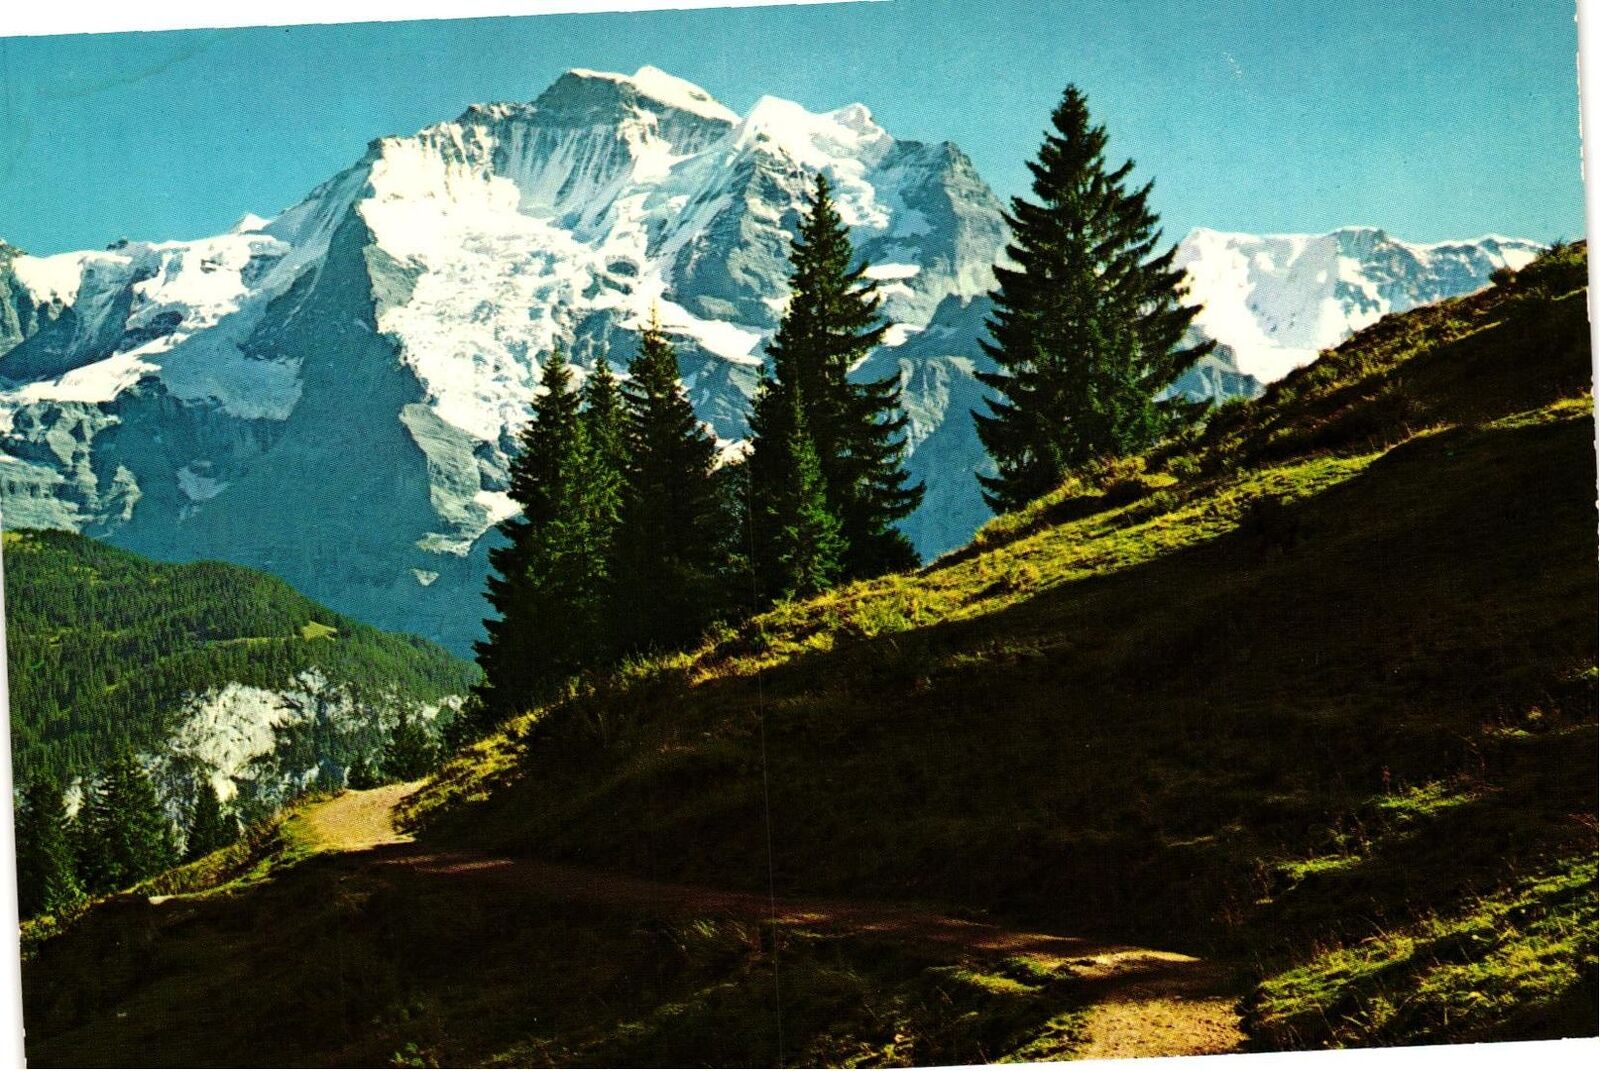 VTG Postcard- 35926. DIE JUNGFRAU. UnPost 1960